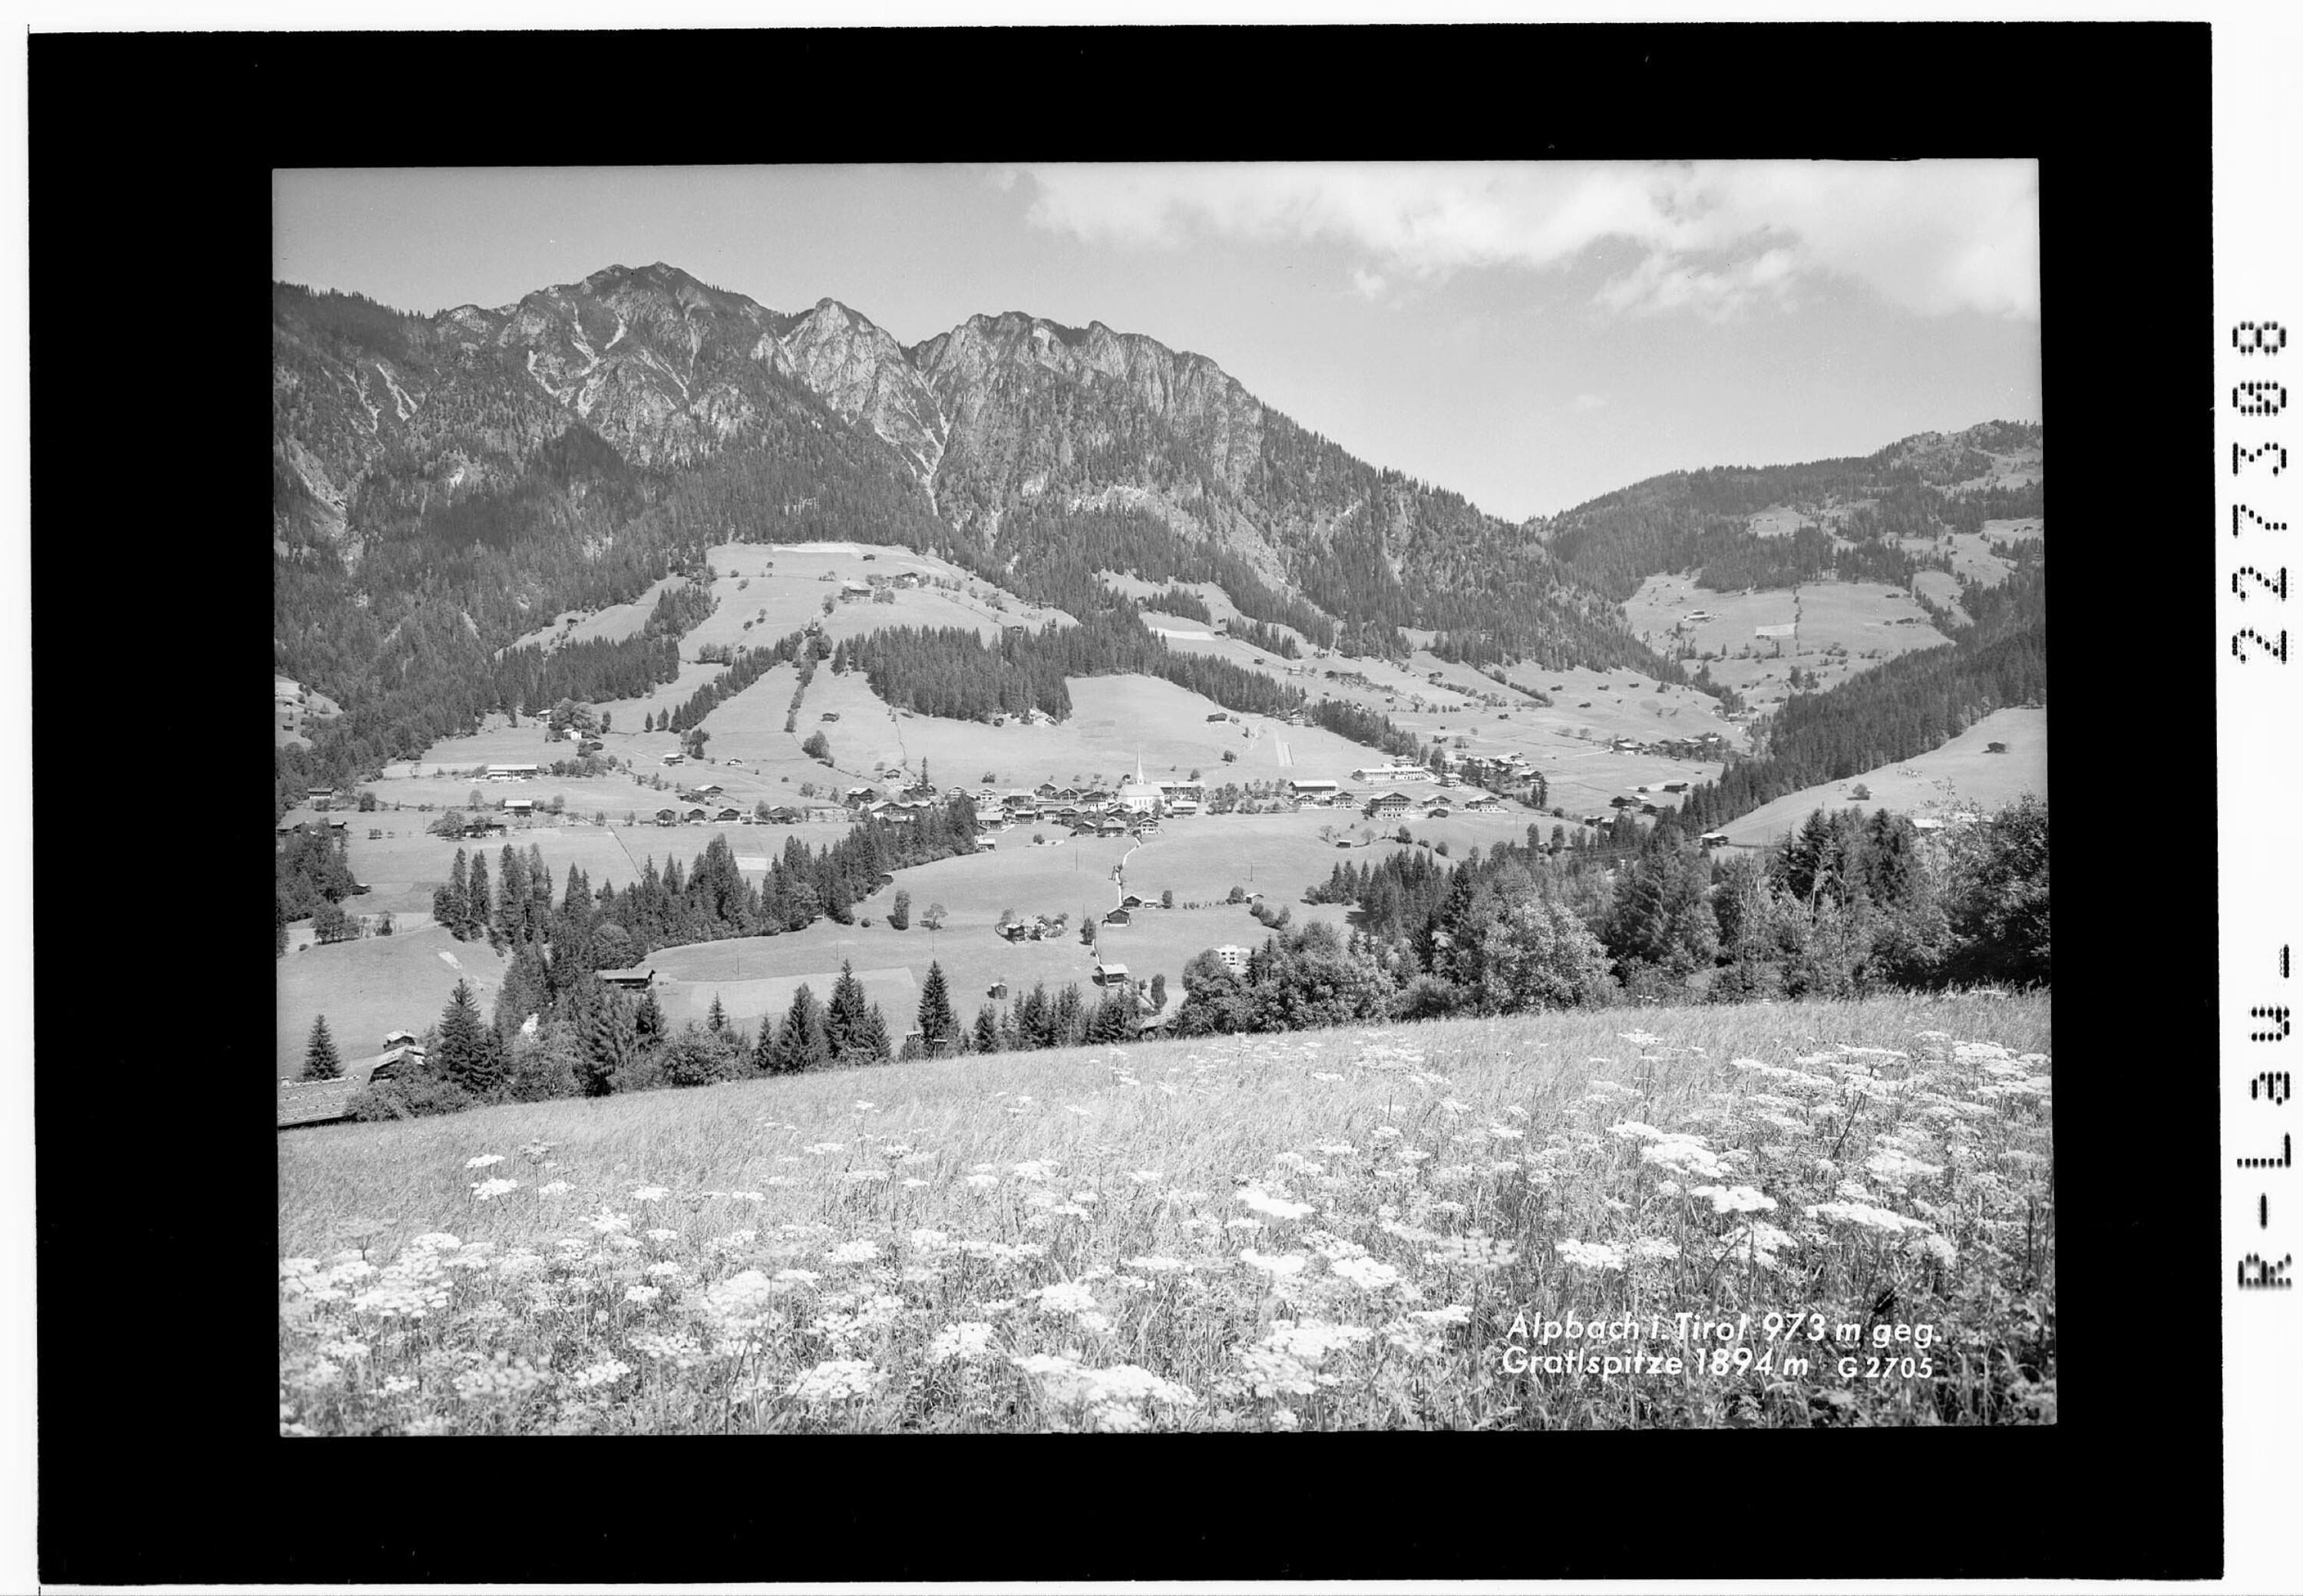 Alpbach in Tirol 973 m gegen Gratlspitze 1894 m></div>


    <hr>
    <div class=